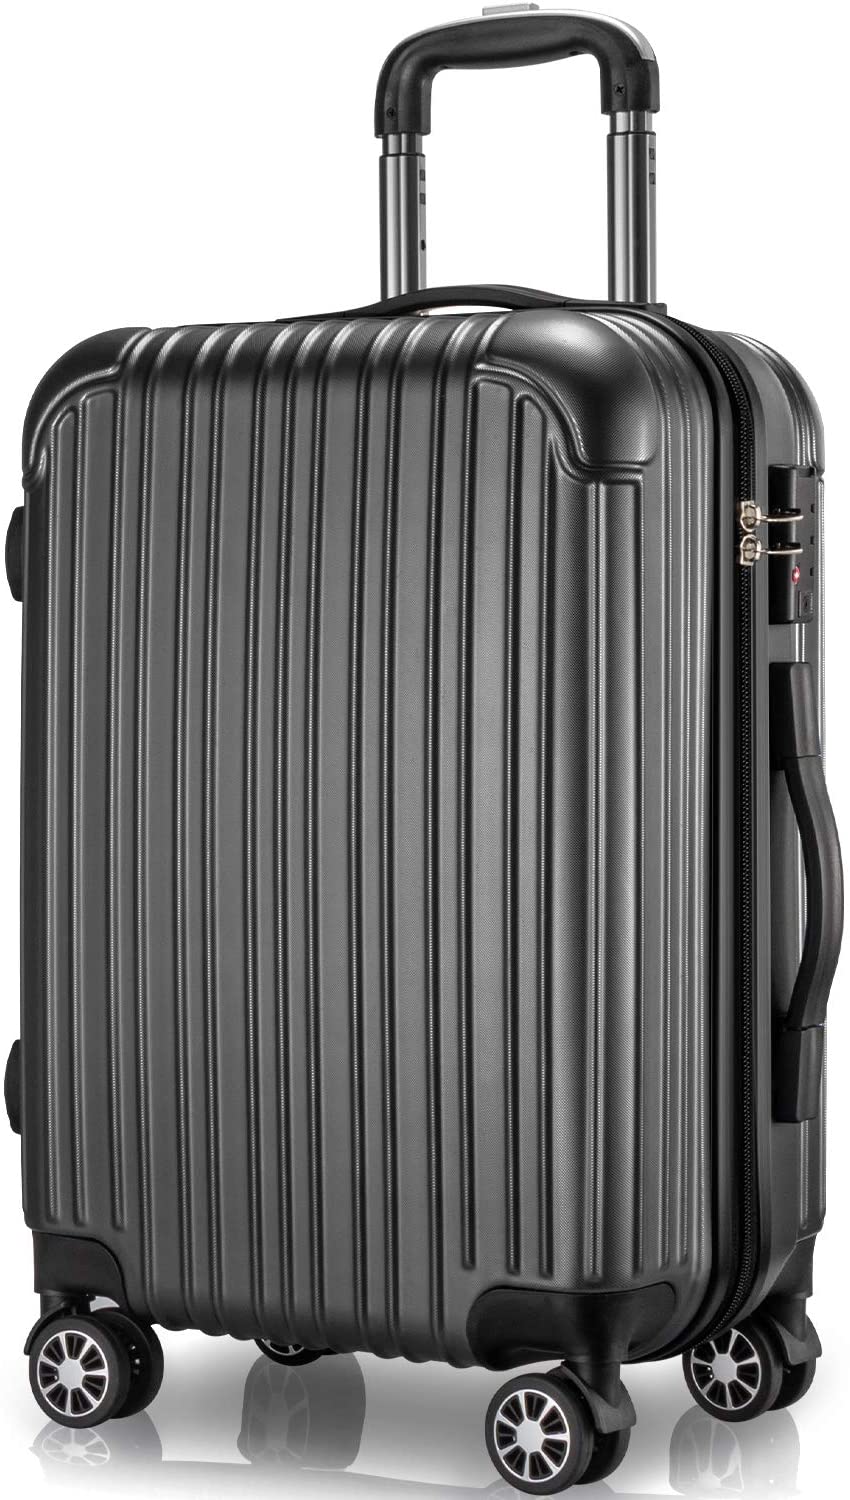 スーツケース キャリーケース 65L Mサイズ 大量収納 TSAロック キャリーバッグ ファスナー式 静音 4〜7泊 旅行 ビジネス 出張 カバン  バッグ 中型 軽量 おしゃれ